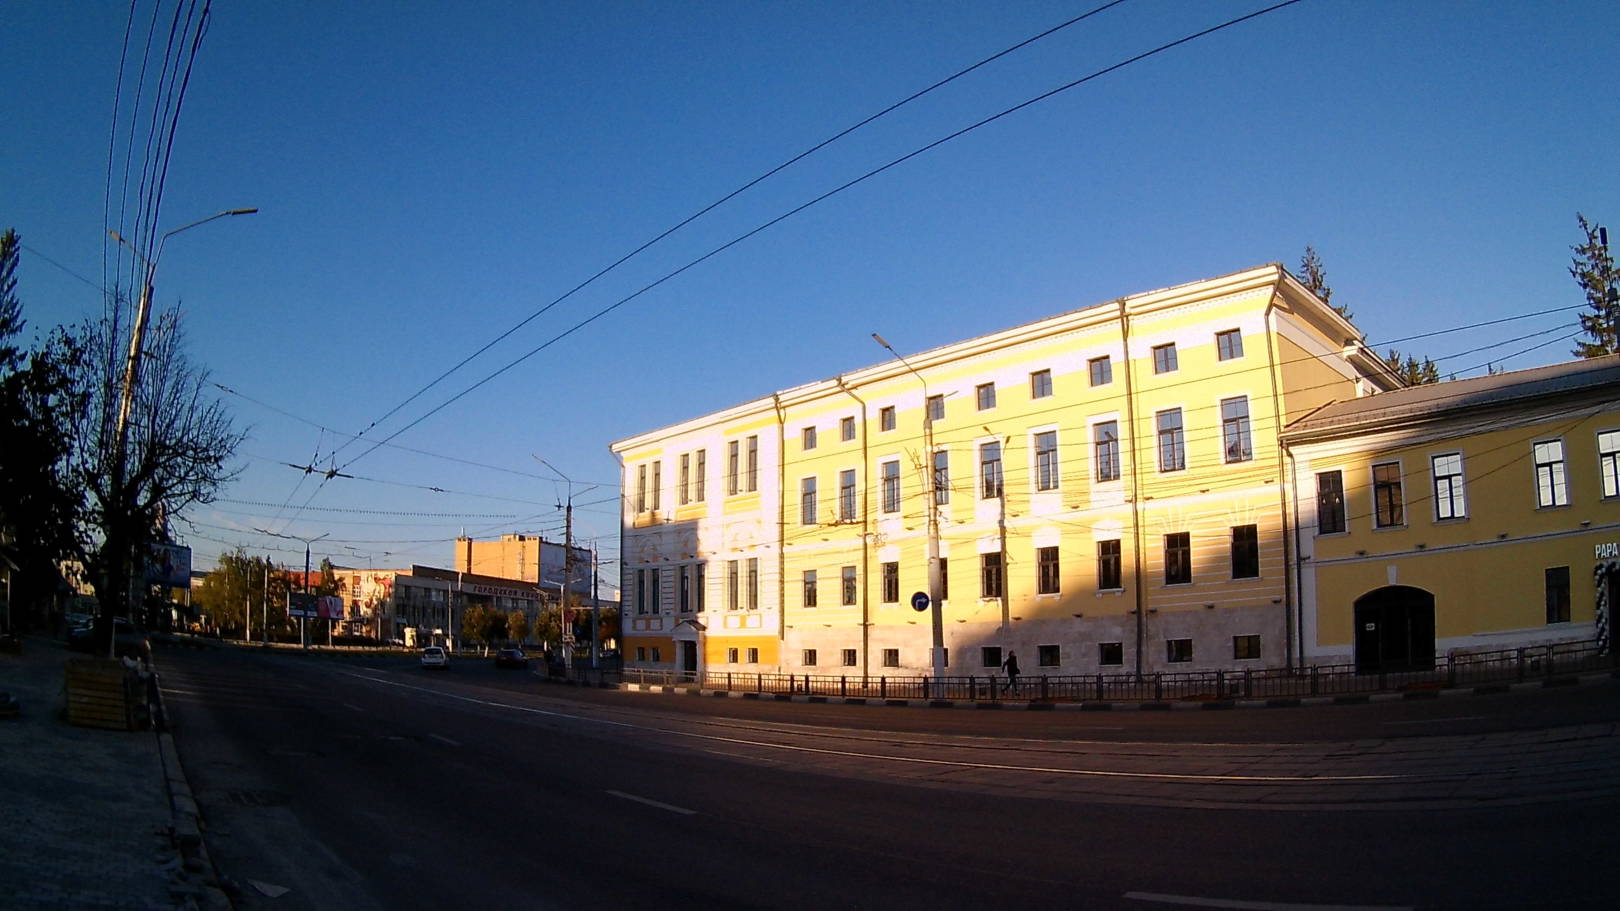 Внешний вид с Запада, со стороны ул. Советской, у здания бывшего училища сейчас (сентябрь 2018 года)